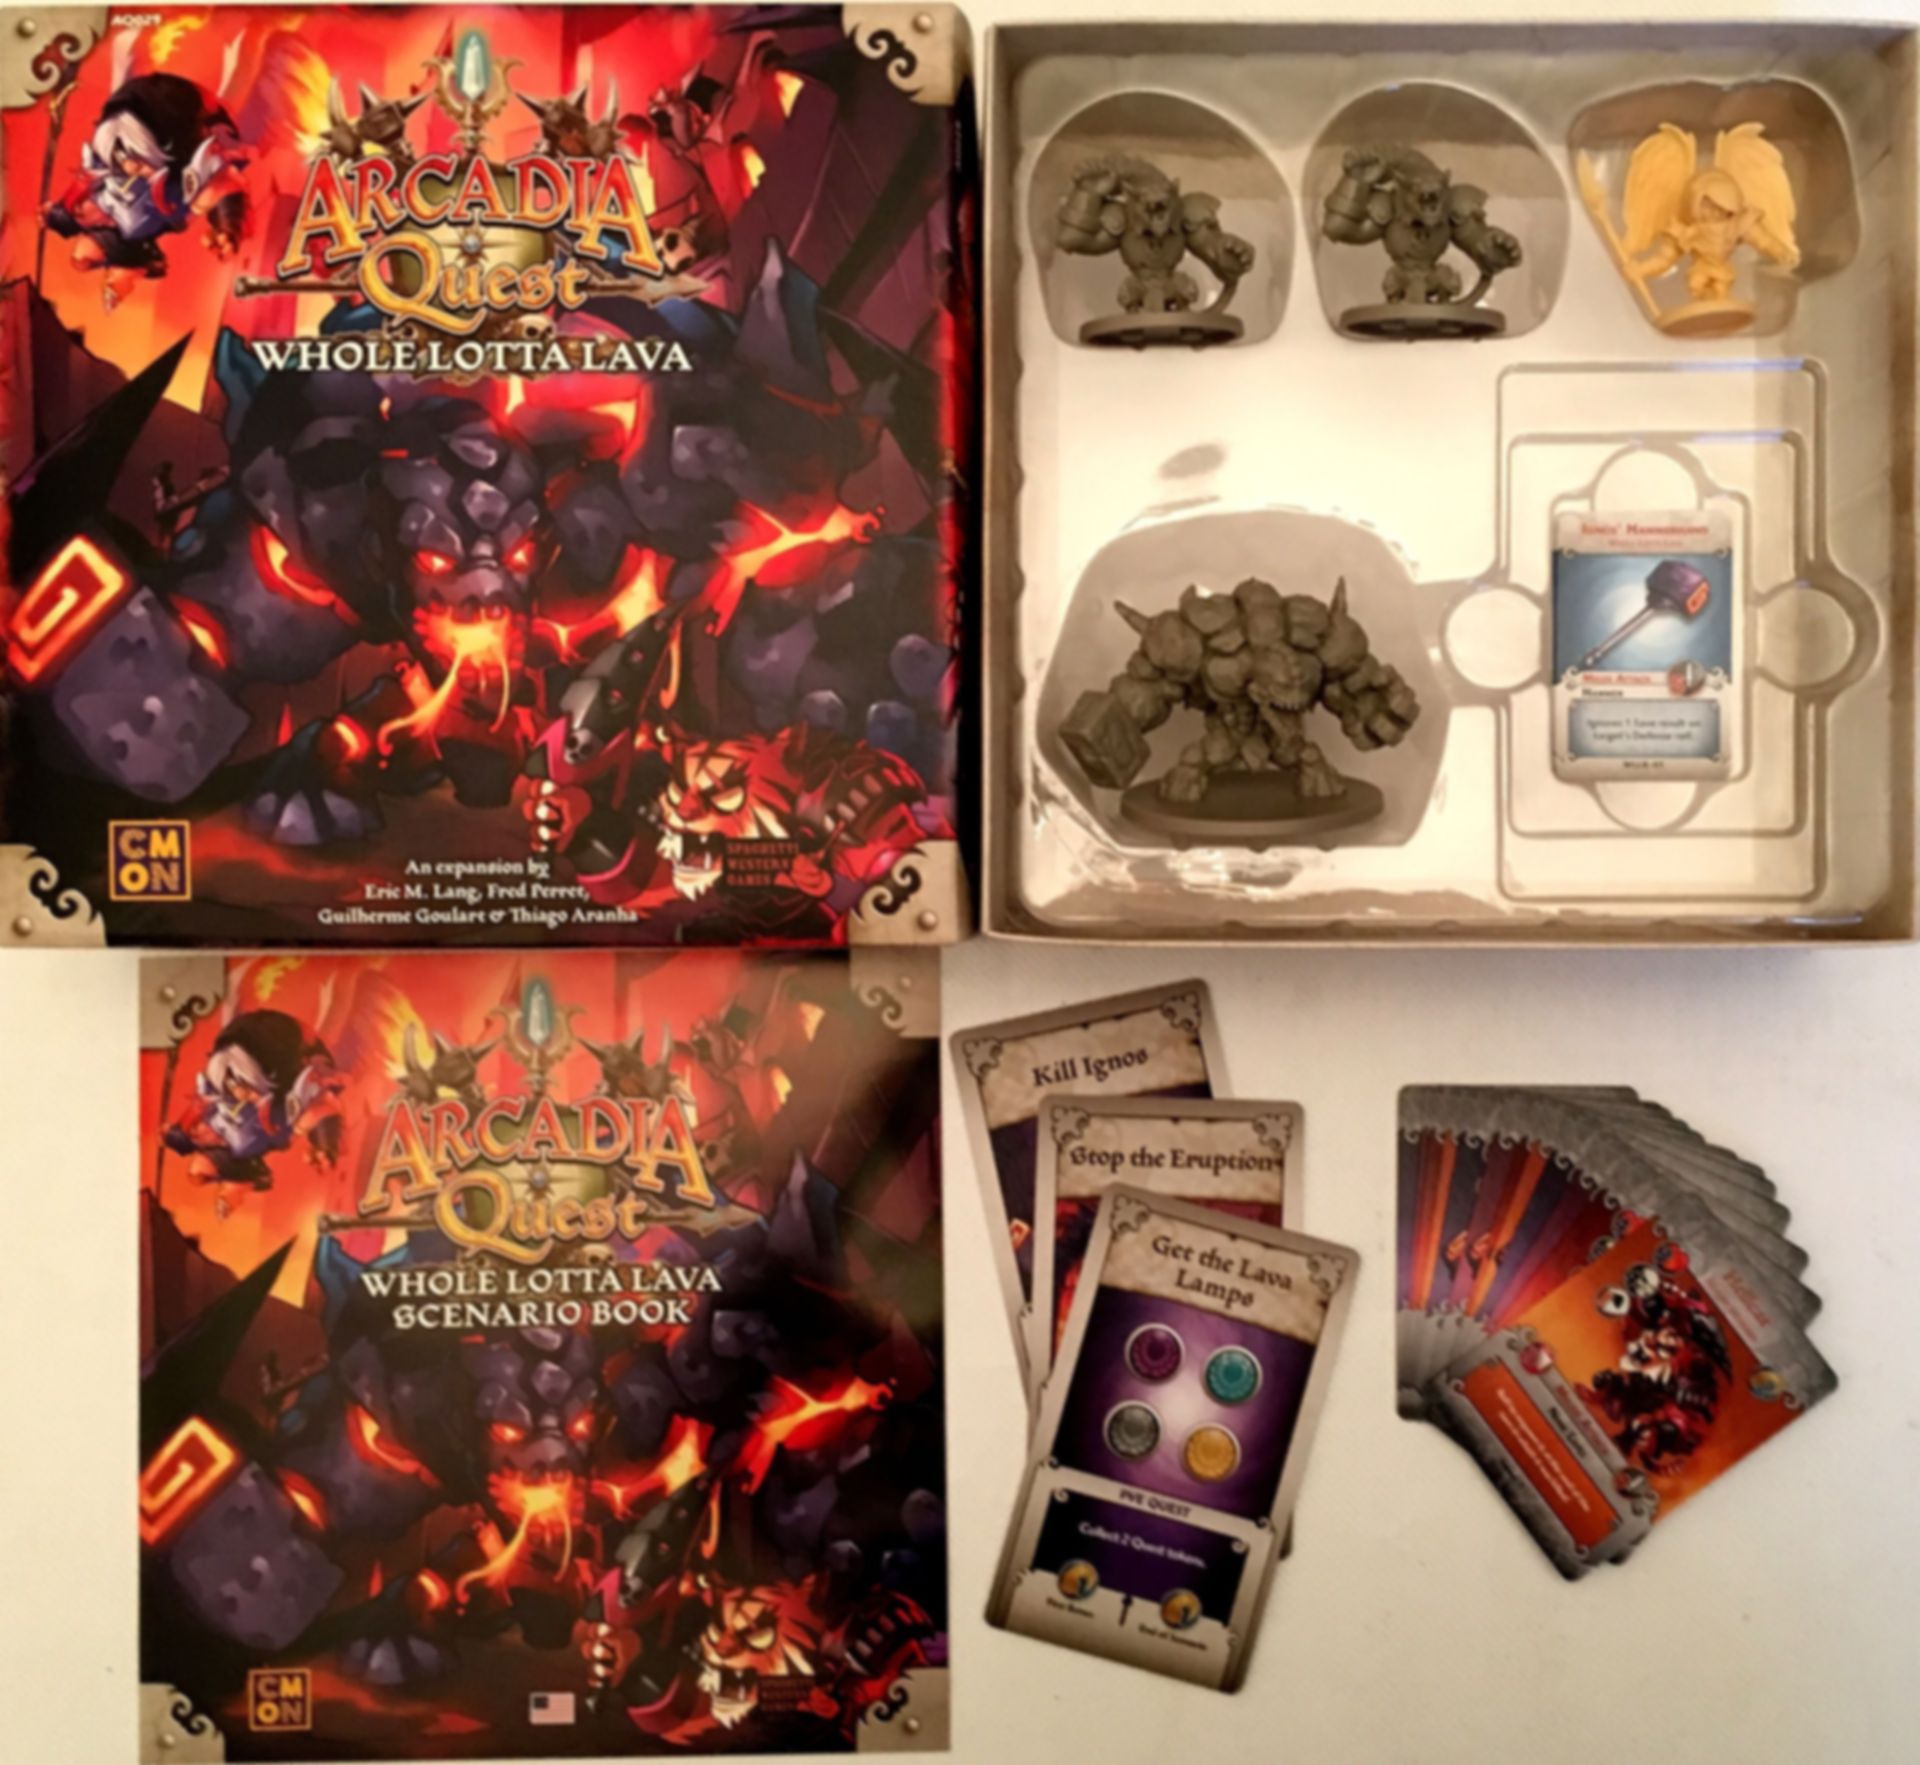 Arcadia Quest: Inferno - Whole Lotta Lava components